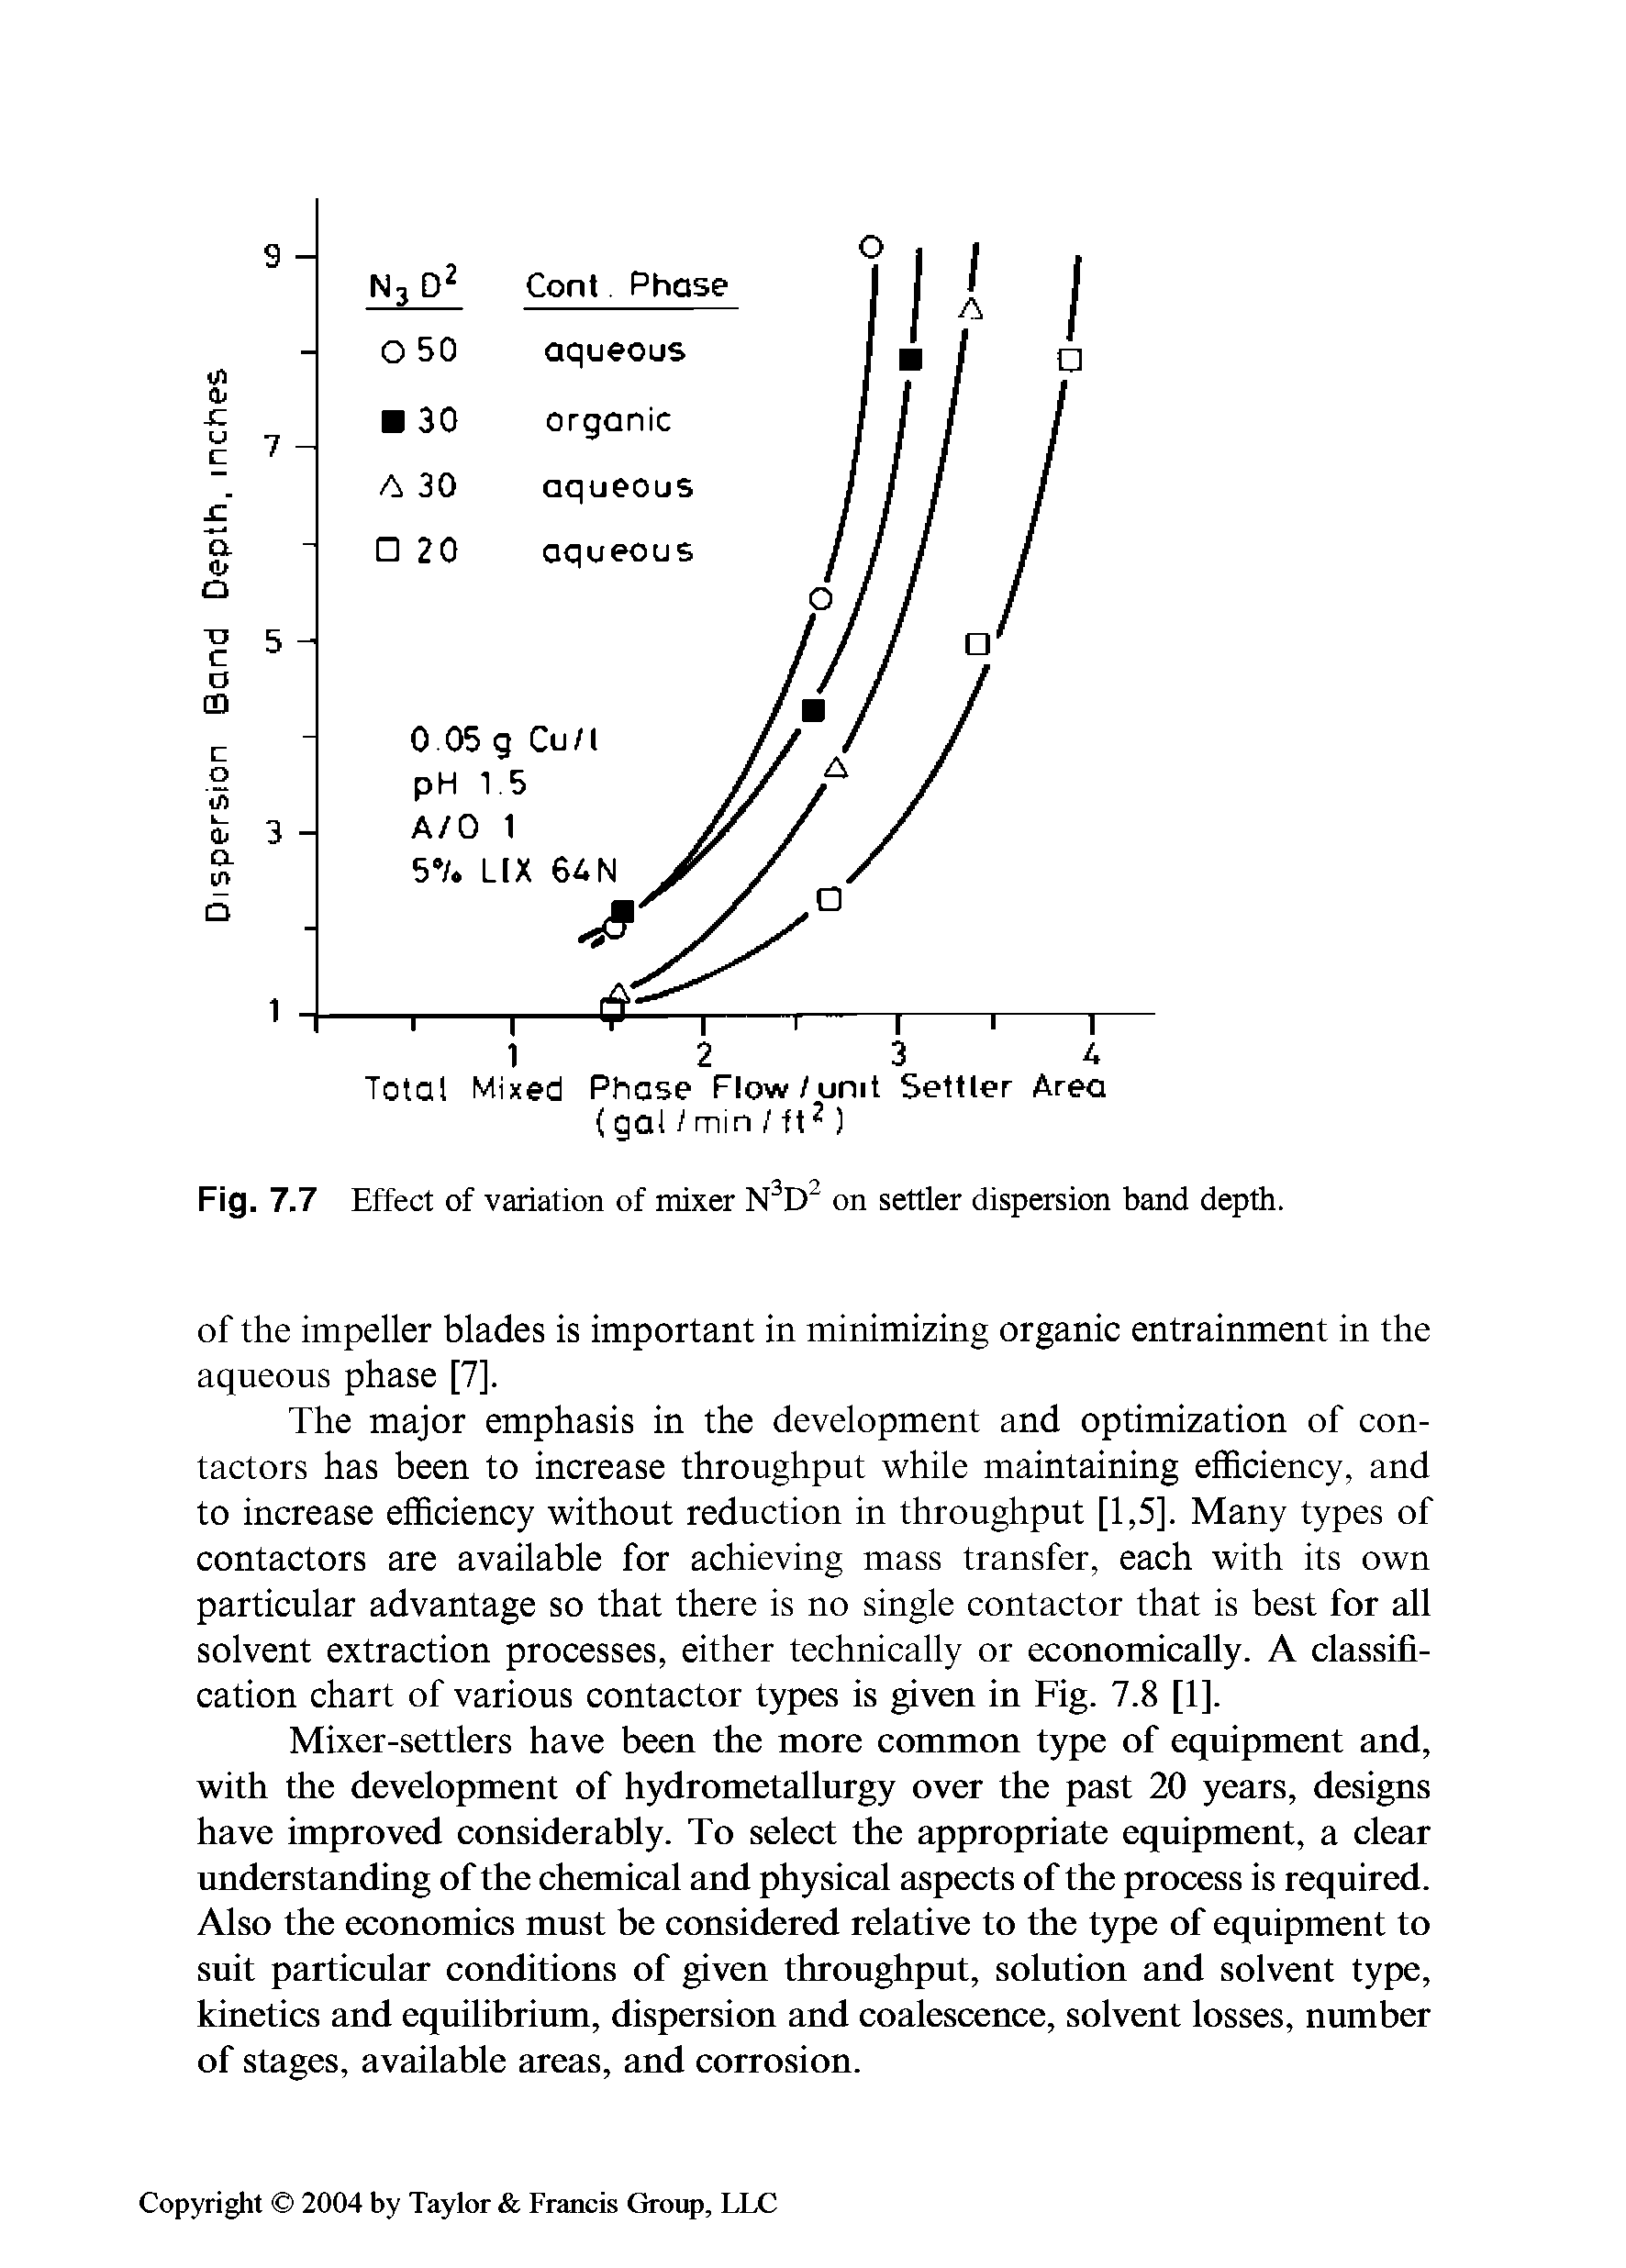 Fig. 7.7 Effect of variation of mixer on settler dispersion band depth.